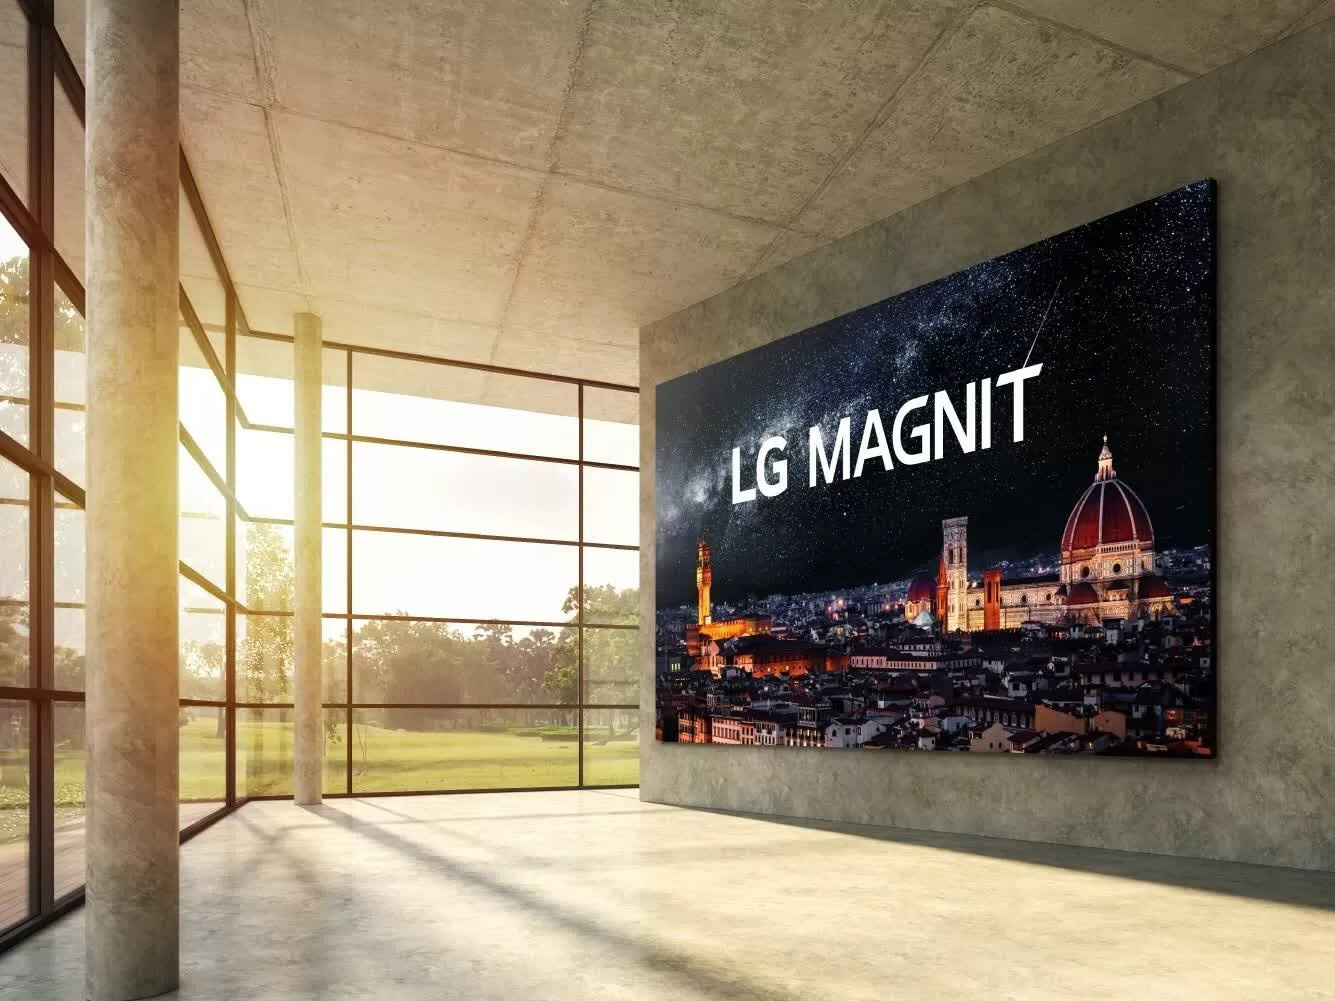 TV LG Magnit kích cỡ khủng 163 inch, màn hình micro LED, đột phá về chất lượng, độ bền.